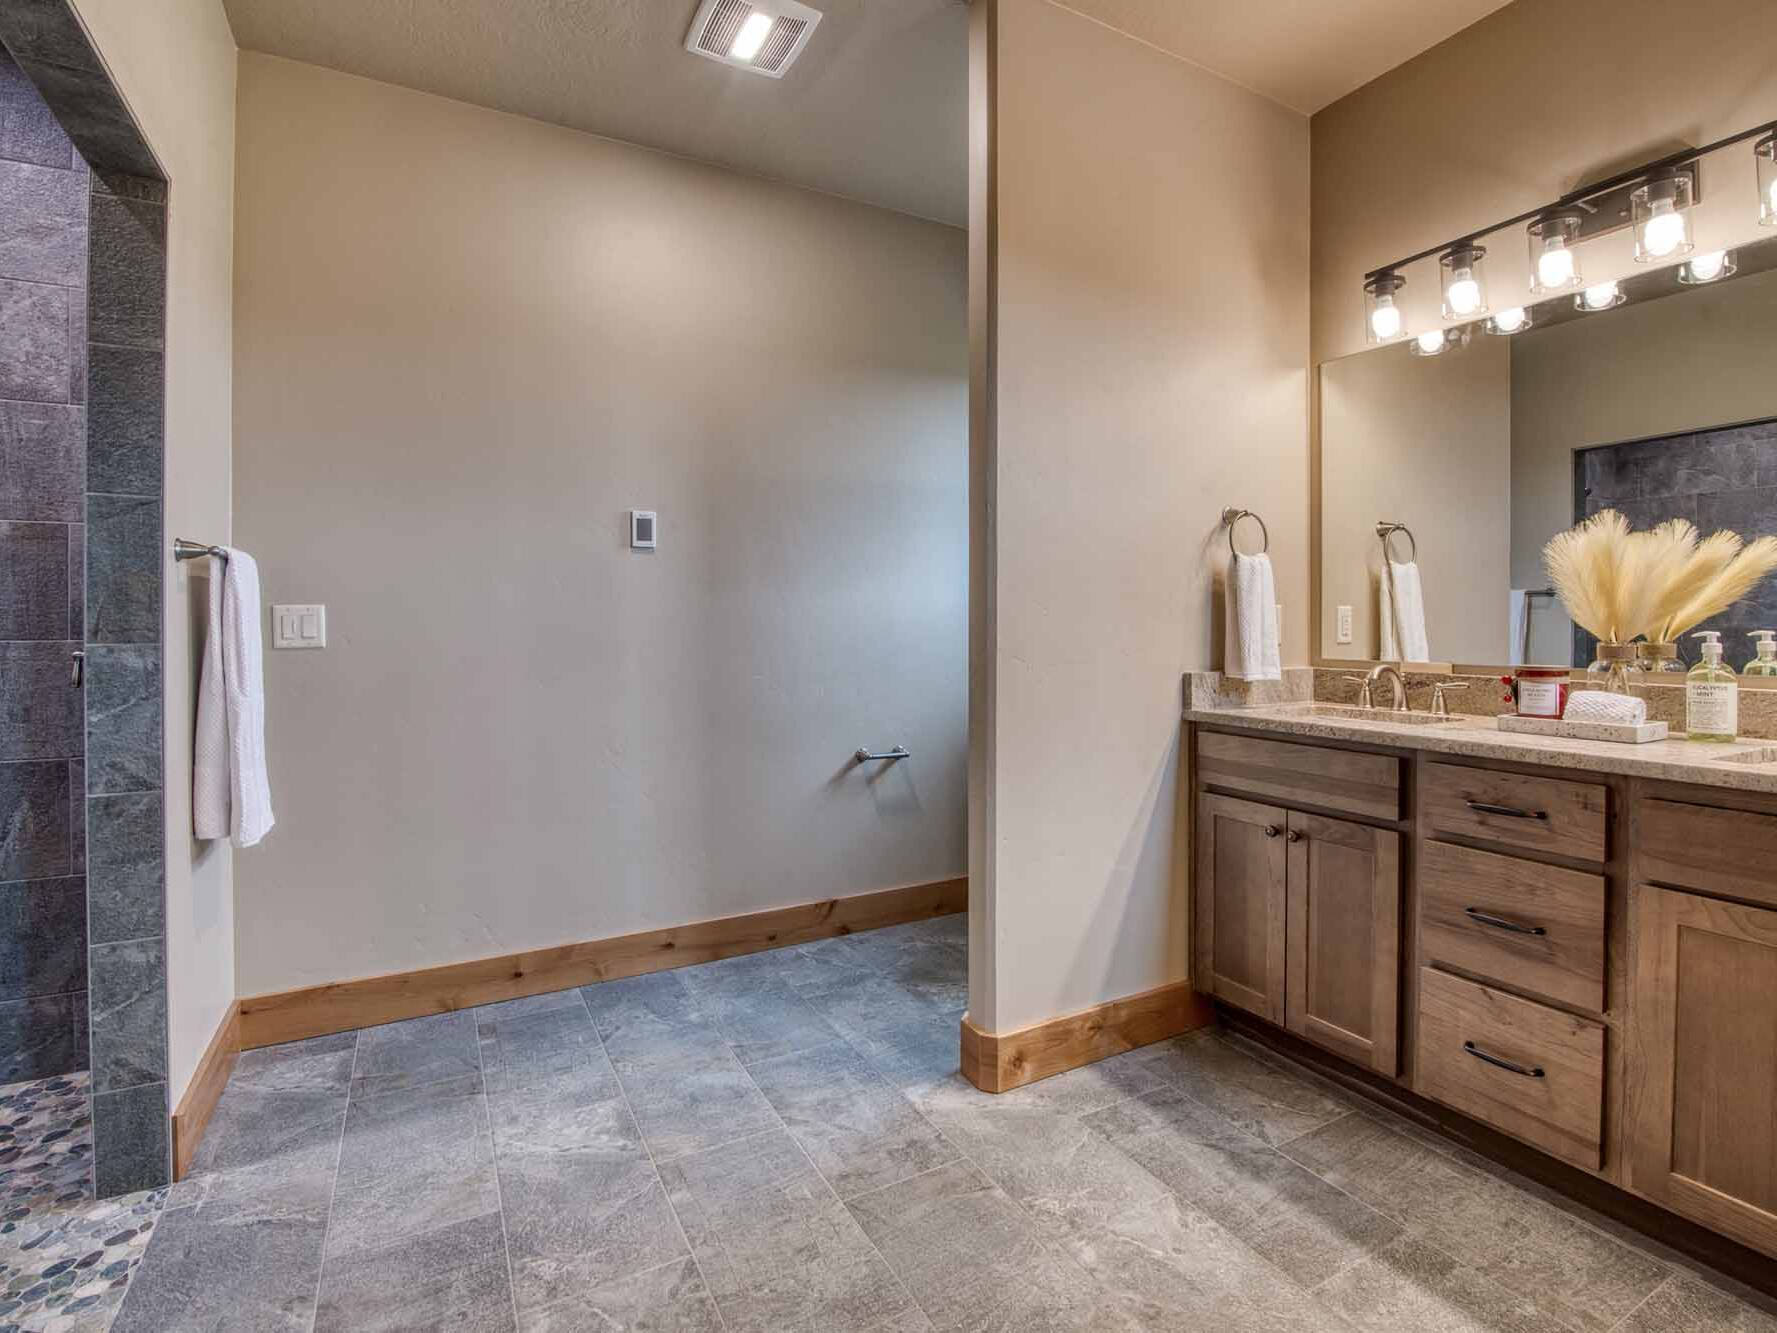 Master Bathroom in a custom home built by Big Sky Builders in Stevensville, MT